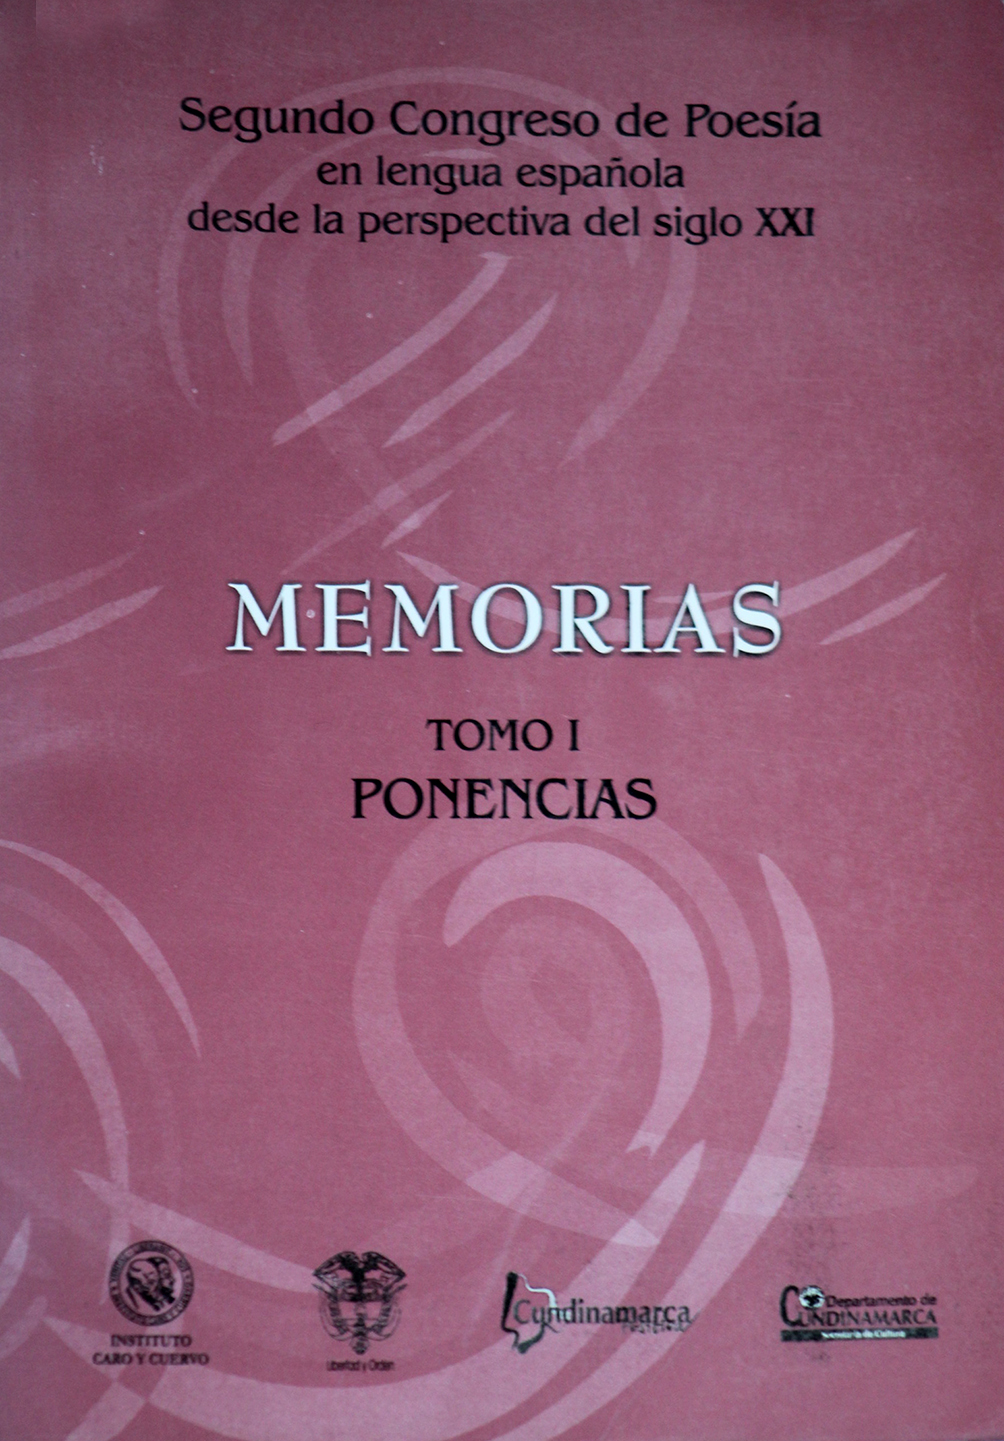 Segundo Congreso de poesía en lengua española desde la perspectiva del siglo XXI. Bogotá, 13 a 17 de agosto de 2001, Tomo I: Ponencias